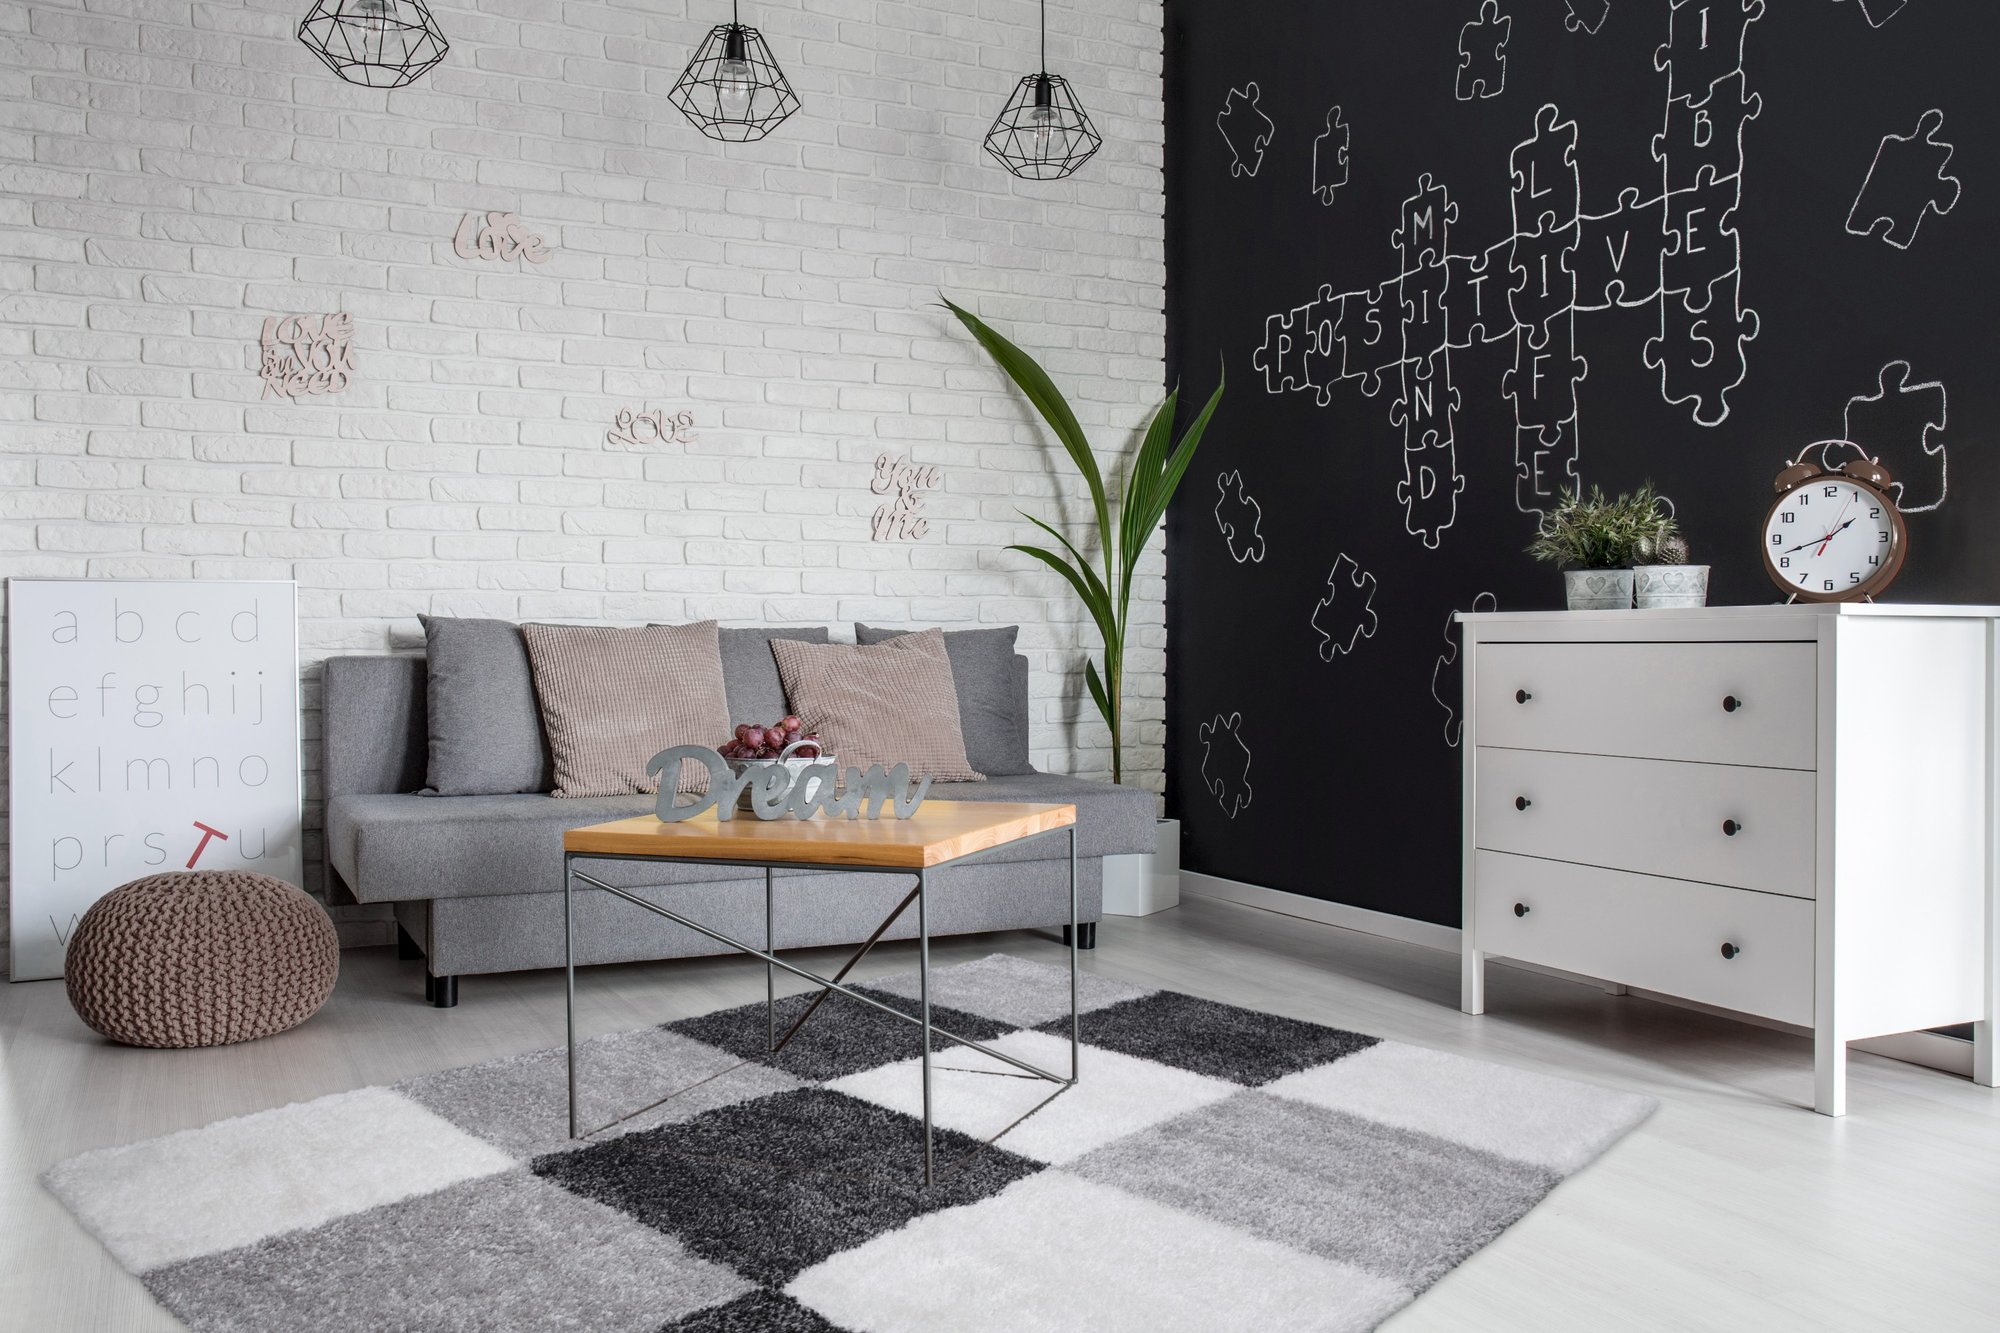 Trang trí với màu xám than: Làm mềm sàn nhà của bạn bằng một tấm thảm Anthracite